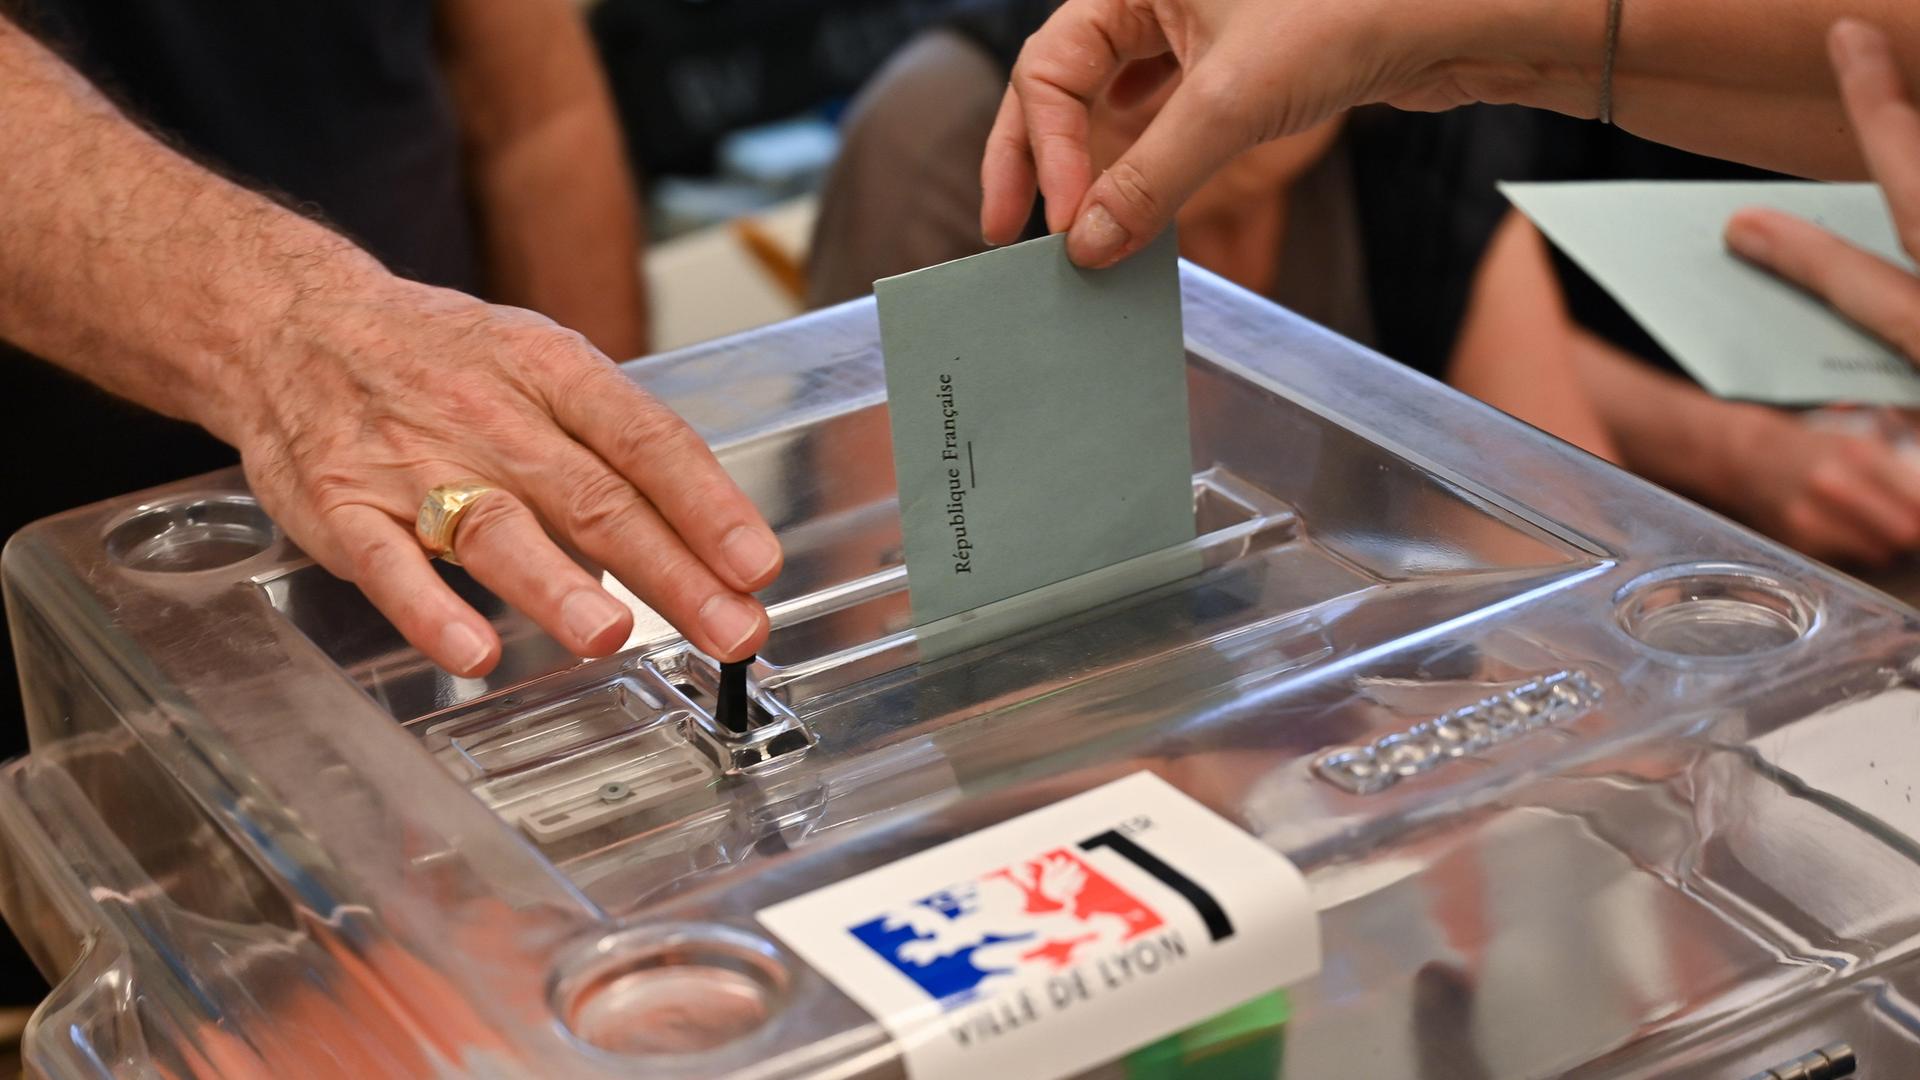 Es ist eine Wahlurne zu sehen sowie zwei Hände. Eine Hand öffnet die Wahlurne, die andere Hand wirft einen geschlossenen Stimmzettel ein.